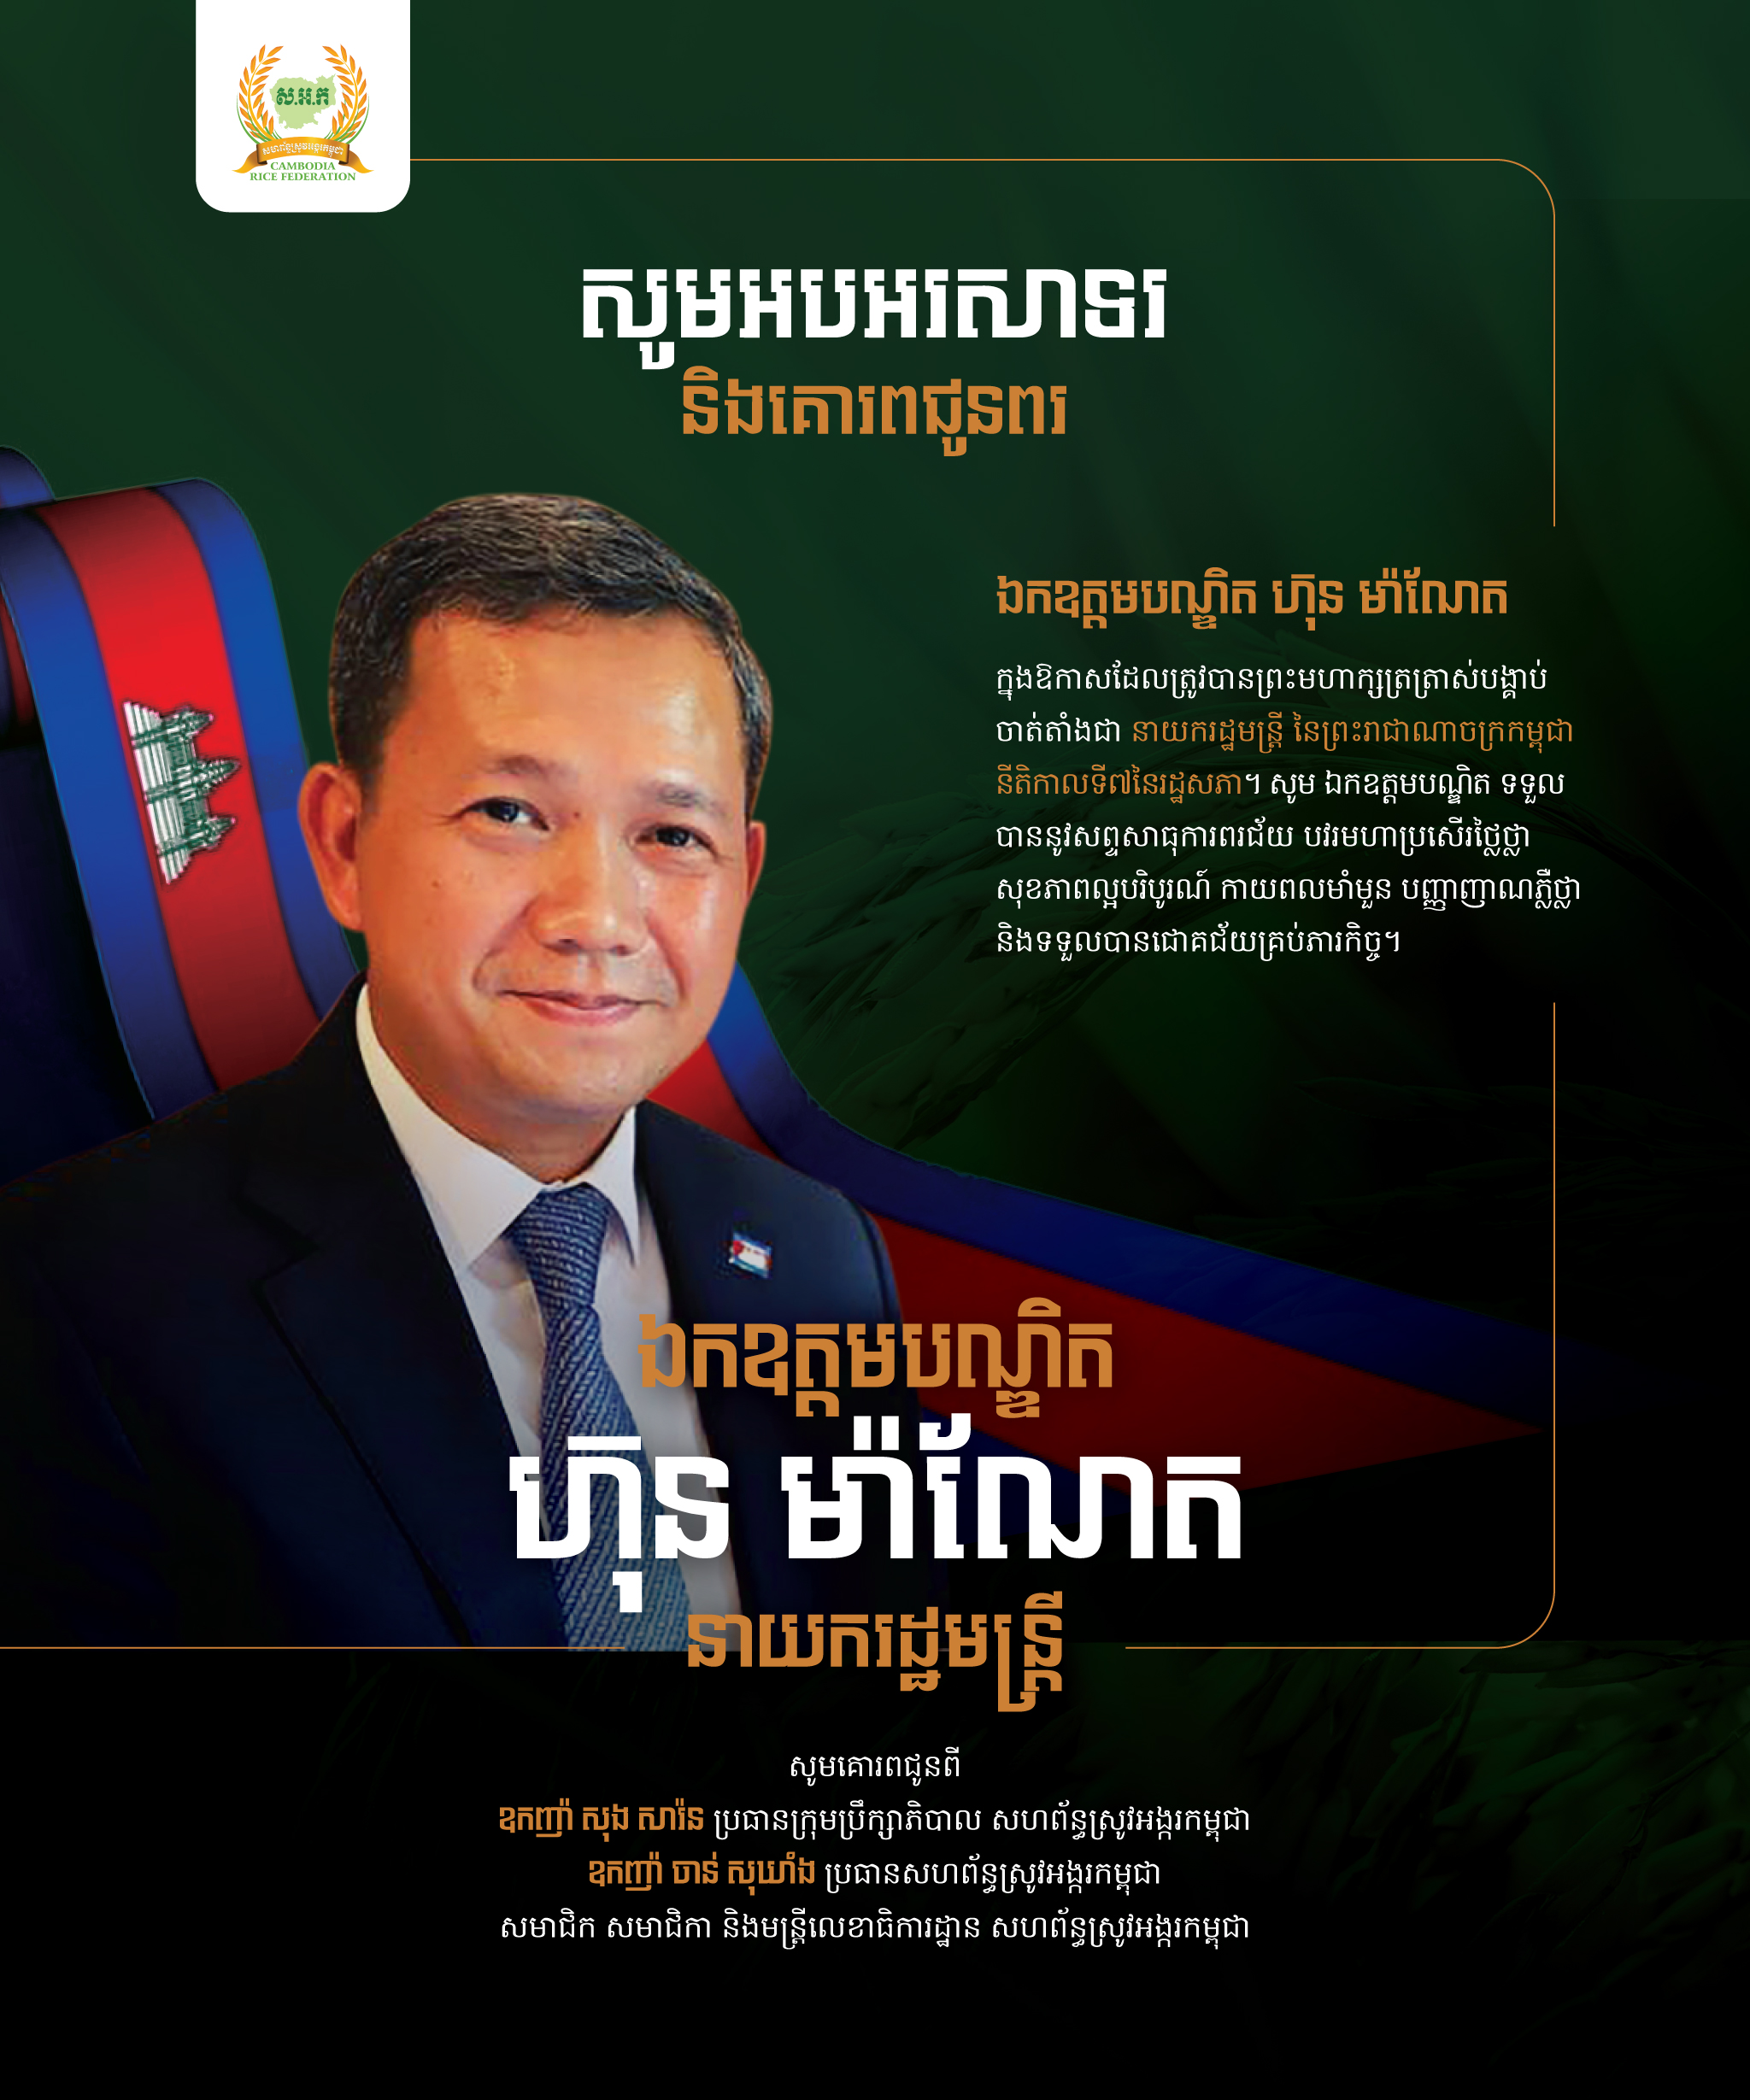 Congratulation H.E. Hun Manet-Prime Minister of Cambodia